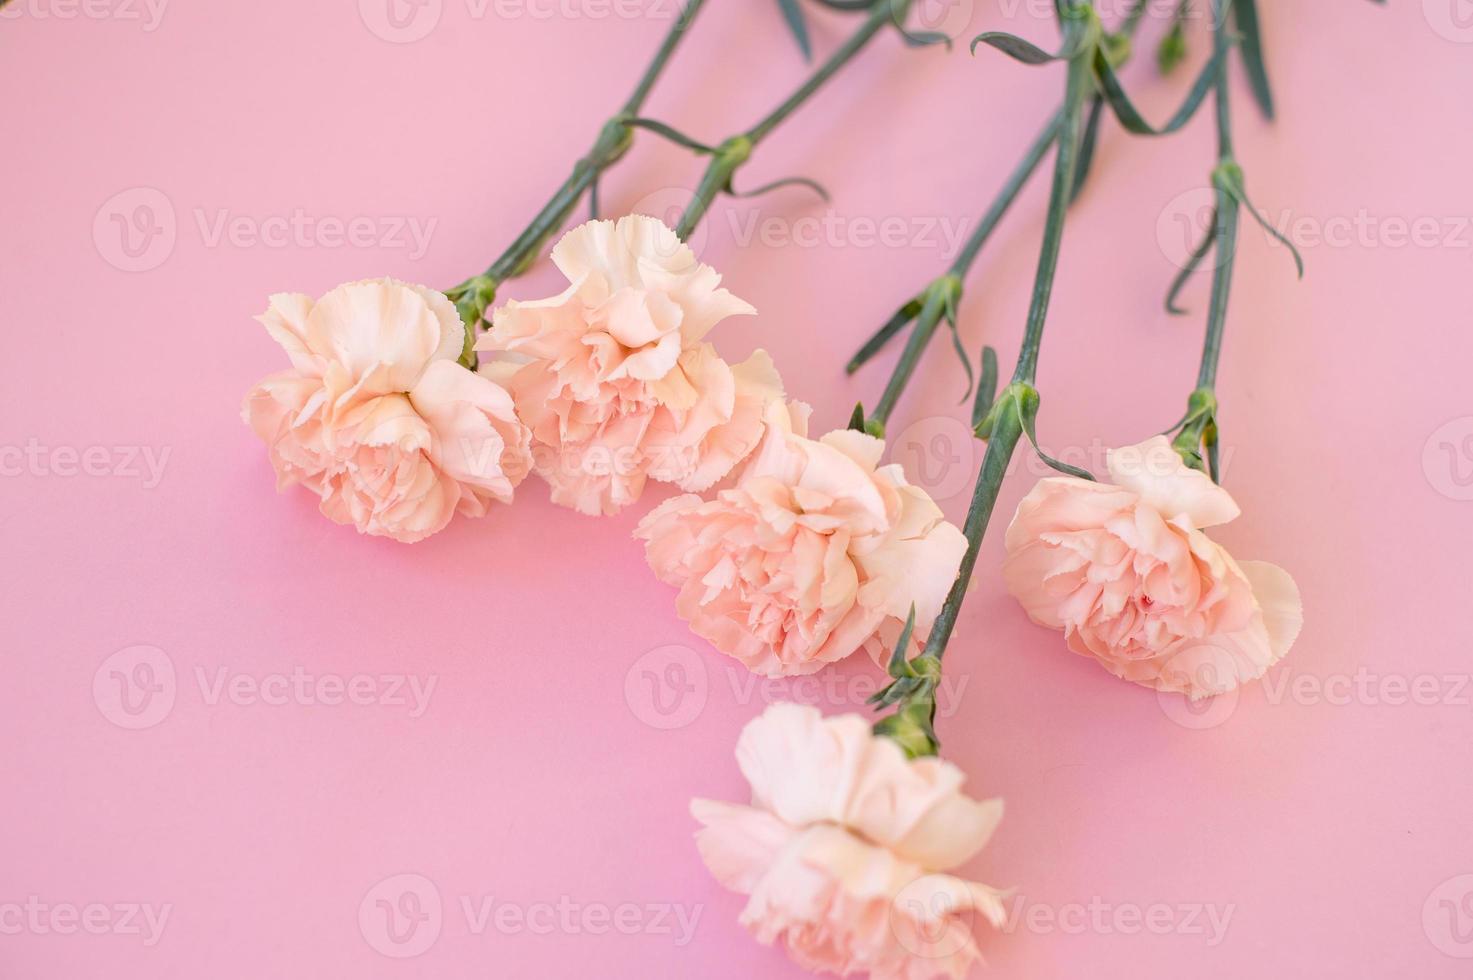 rosa nejlikor på en rosa bakgrund foto